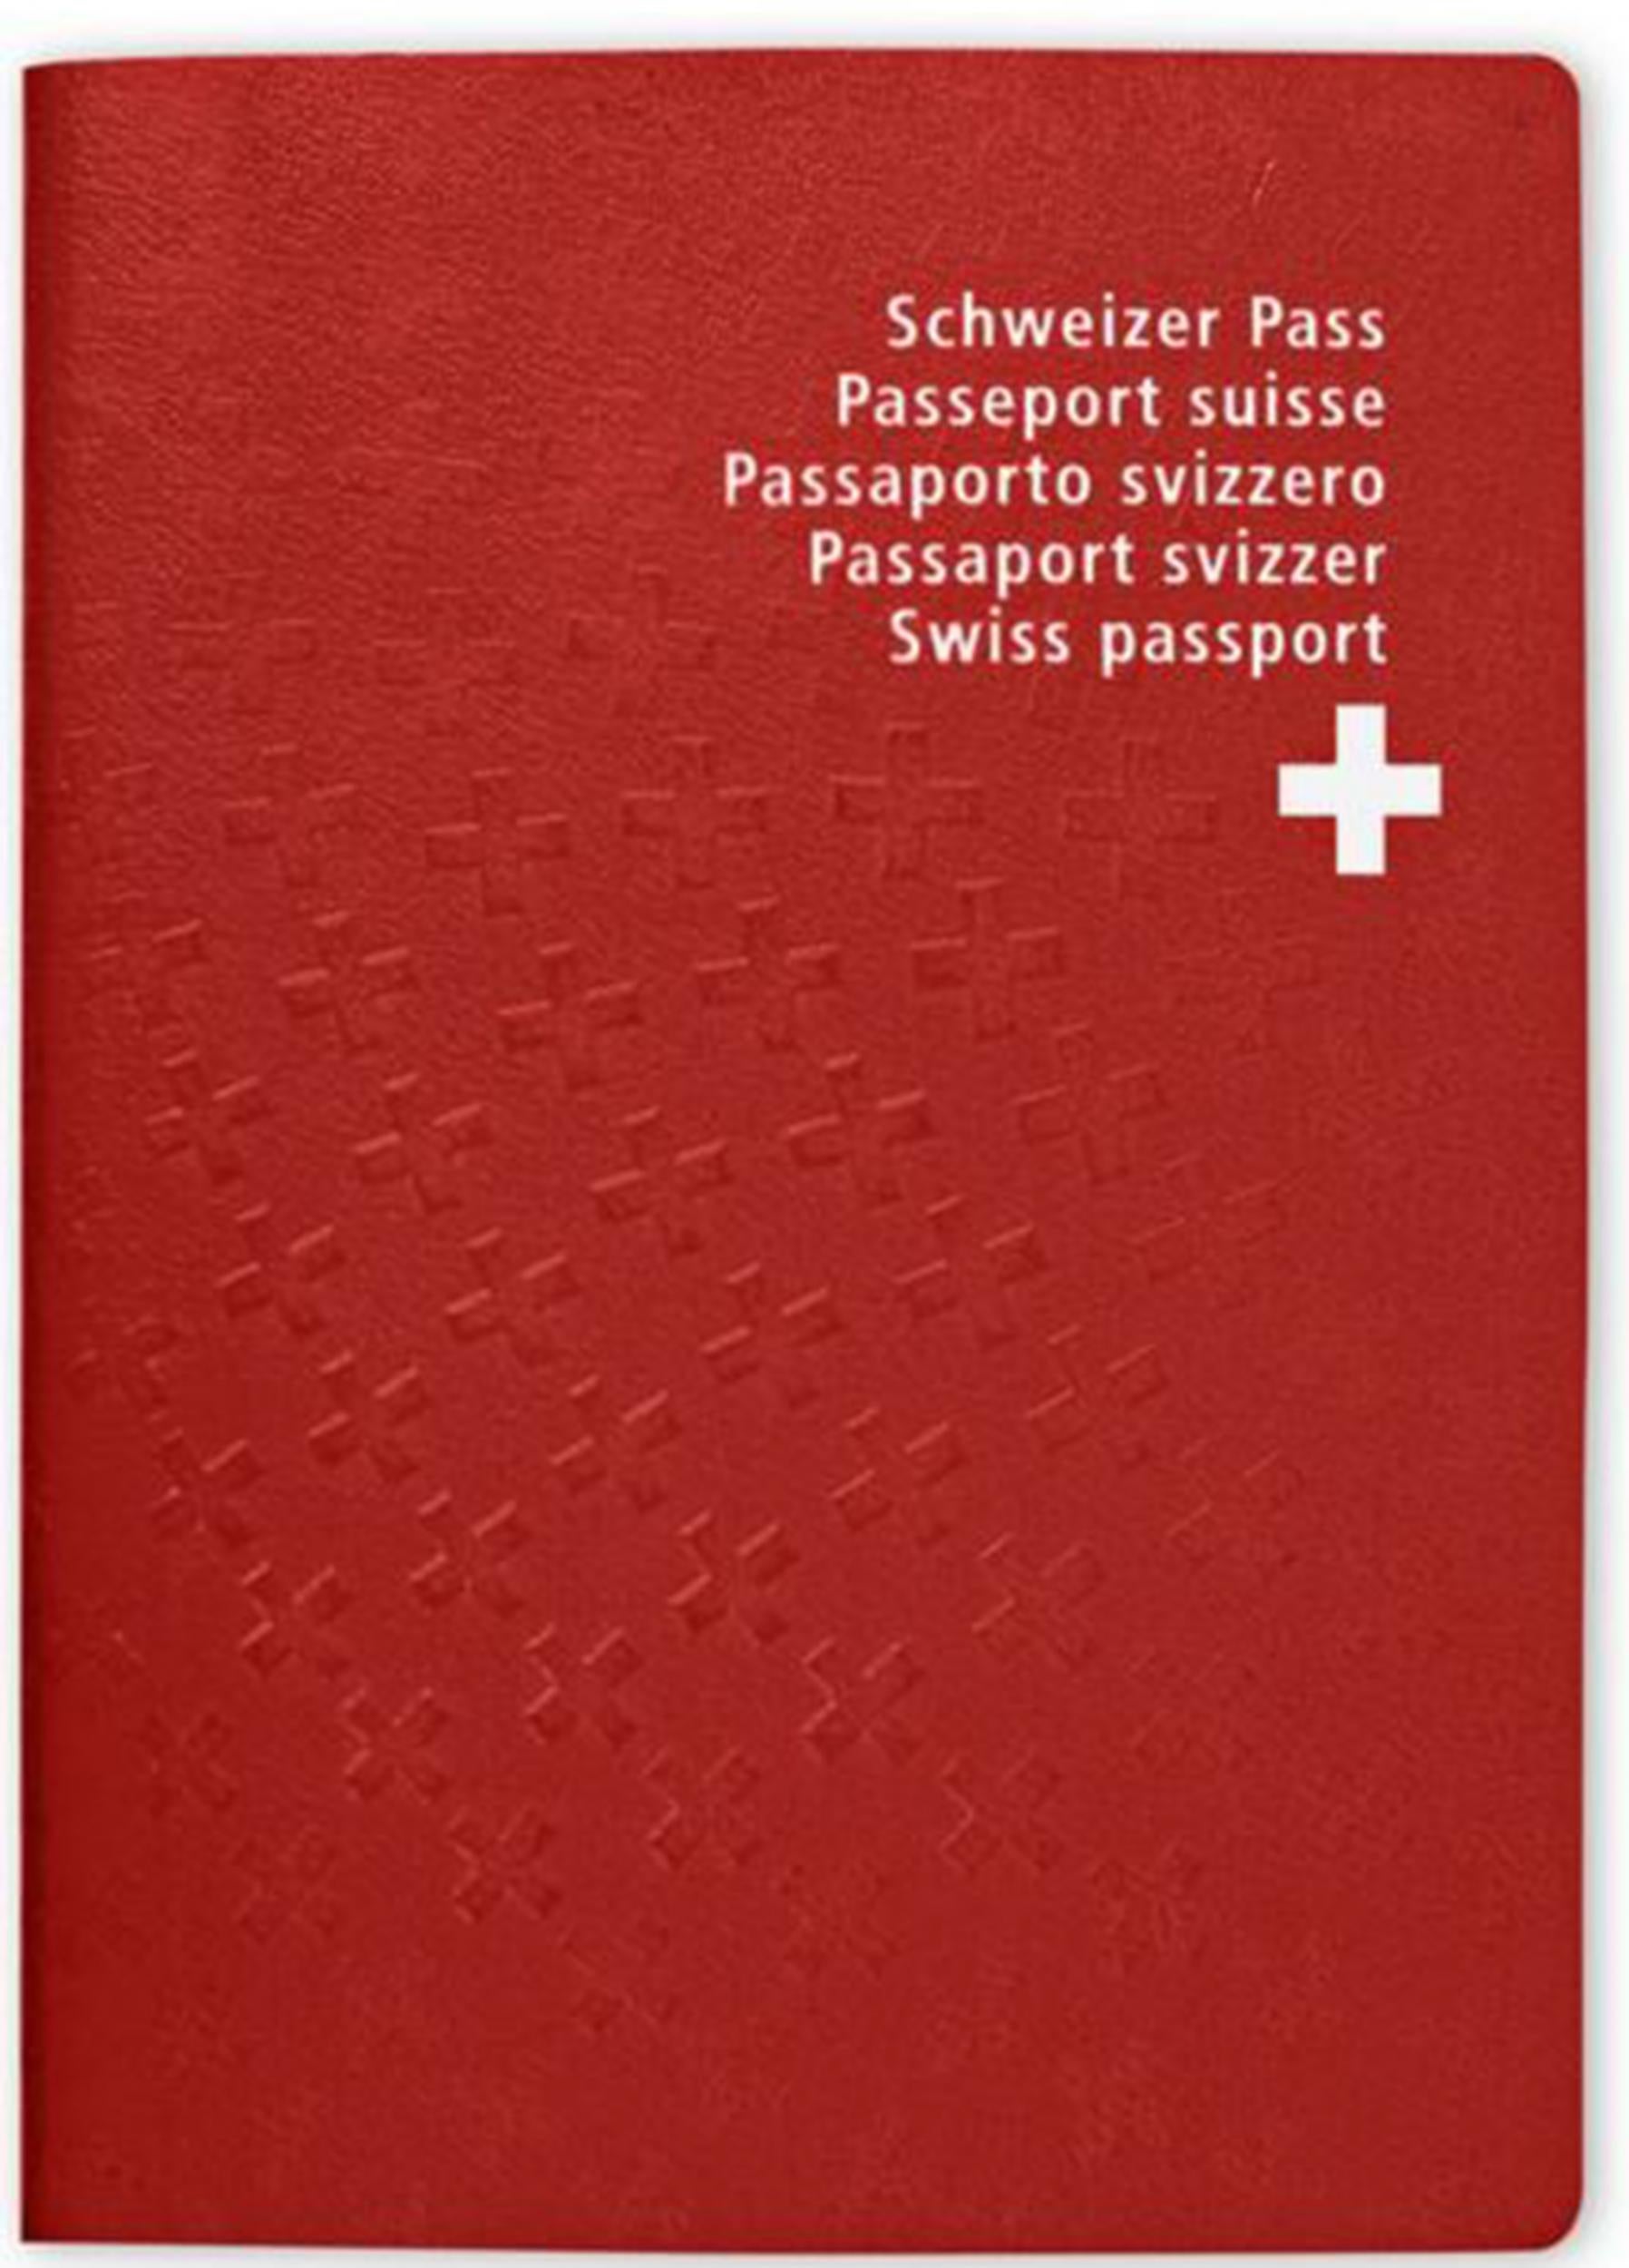 Swiss passports are bright red.